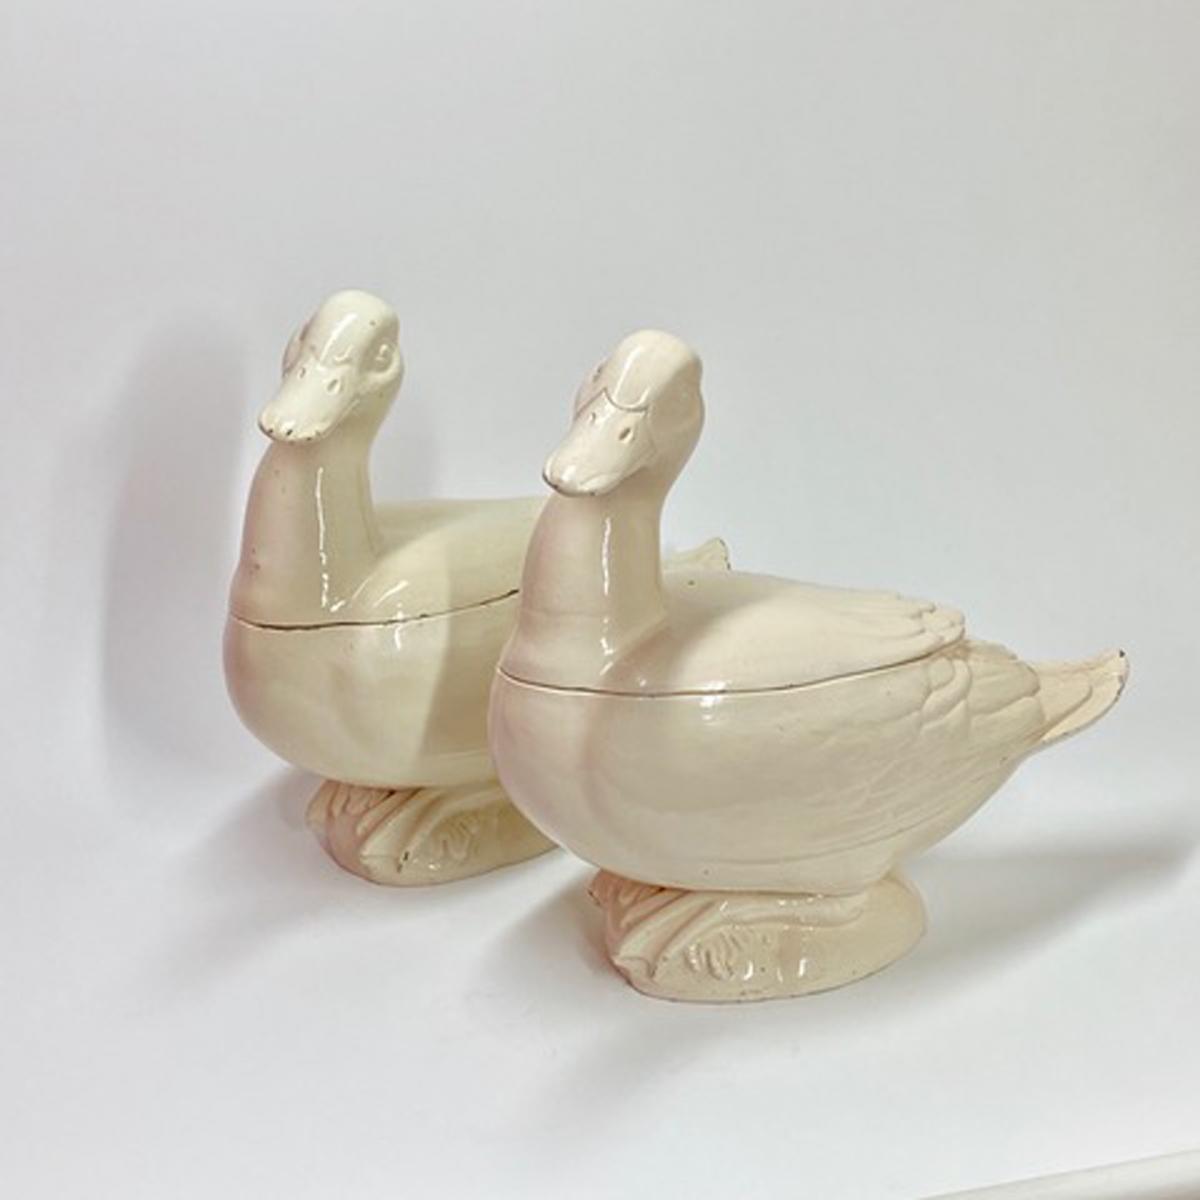 Italian Creamware Tromp L'oeil Tureens in the form of Ducks, Nove di Bassano